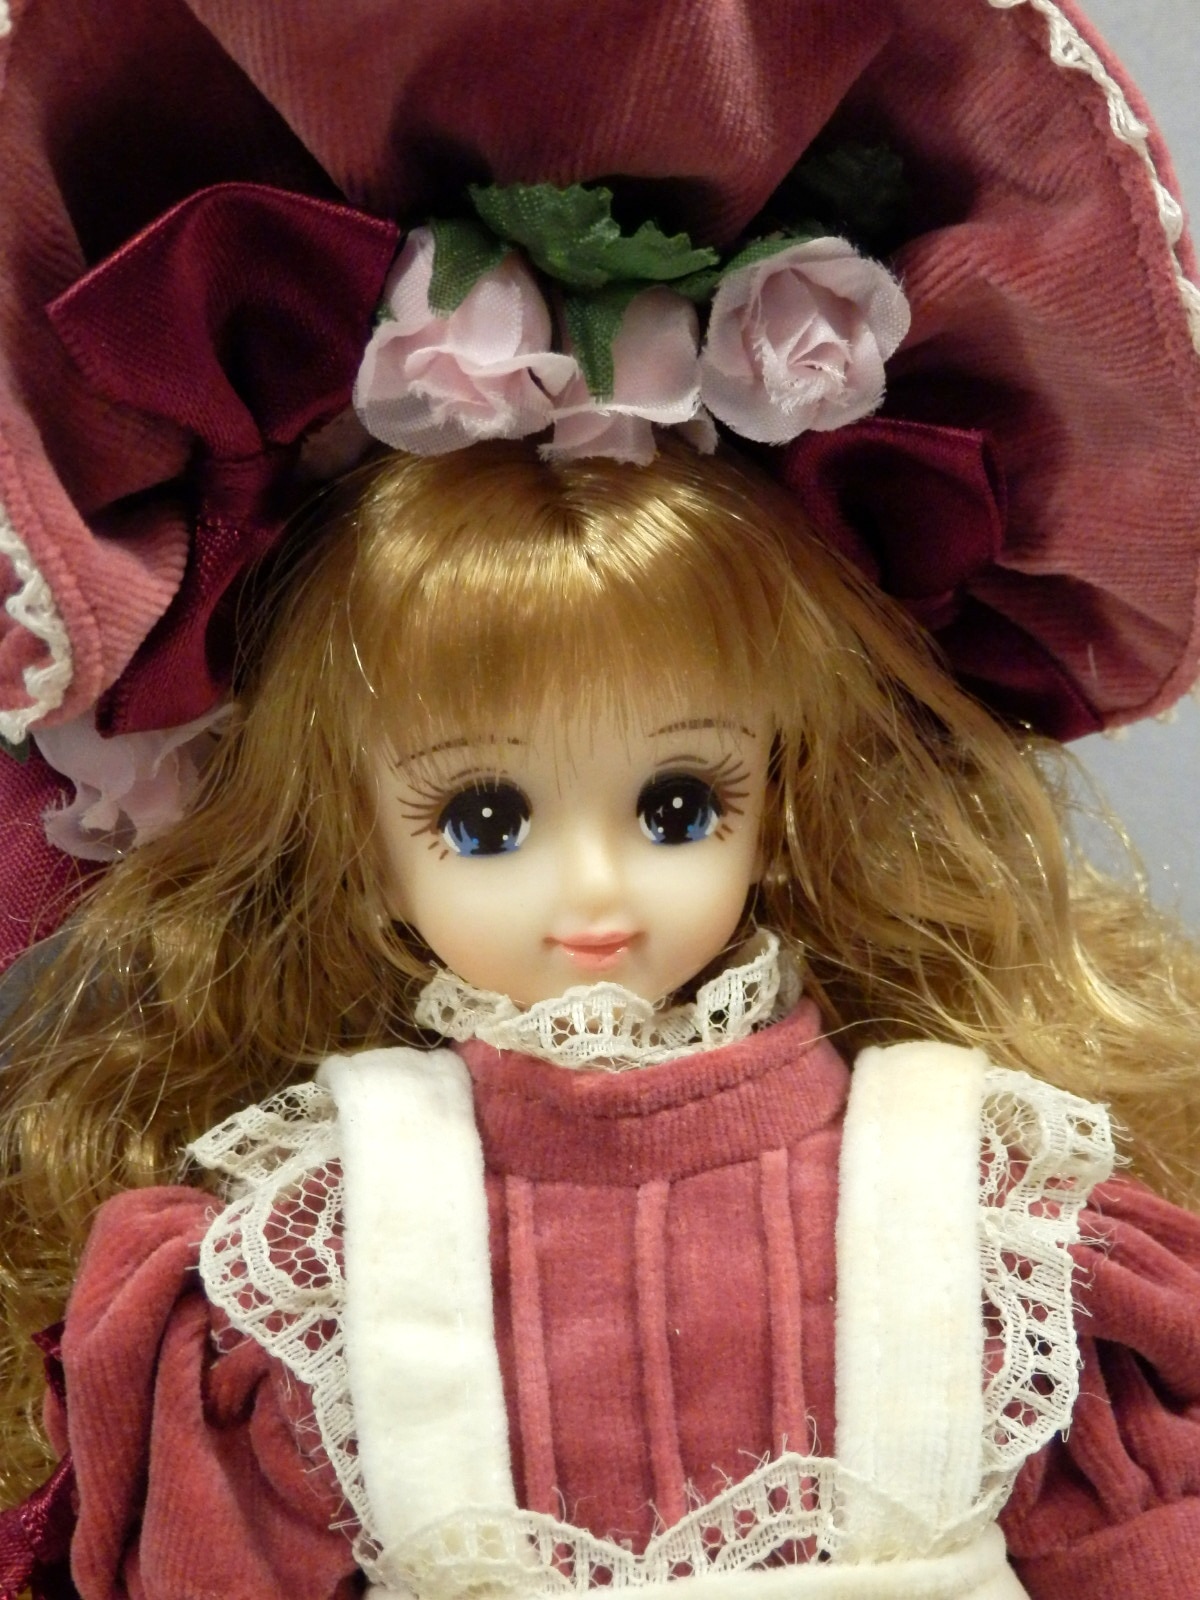 購入格安ヴィクトリアン エクセリーナ ジェニーⅡ 2 II Victorian Excelina Jenny ボルドー ドレス ドール フィギュア 人形